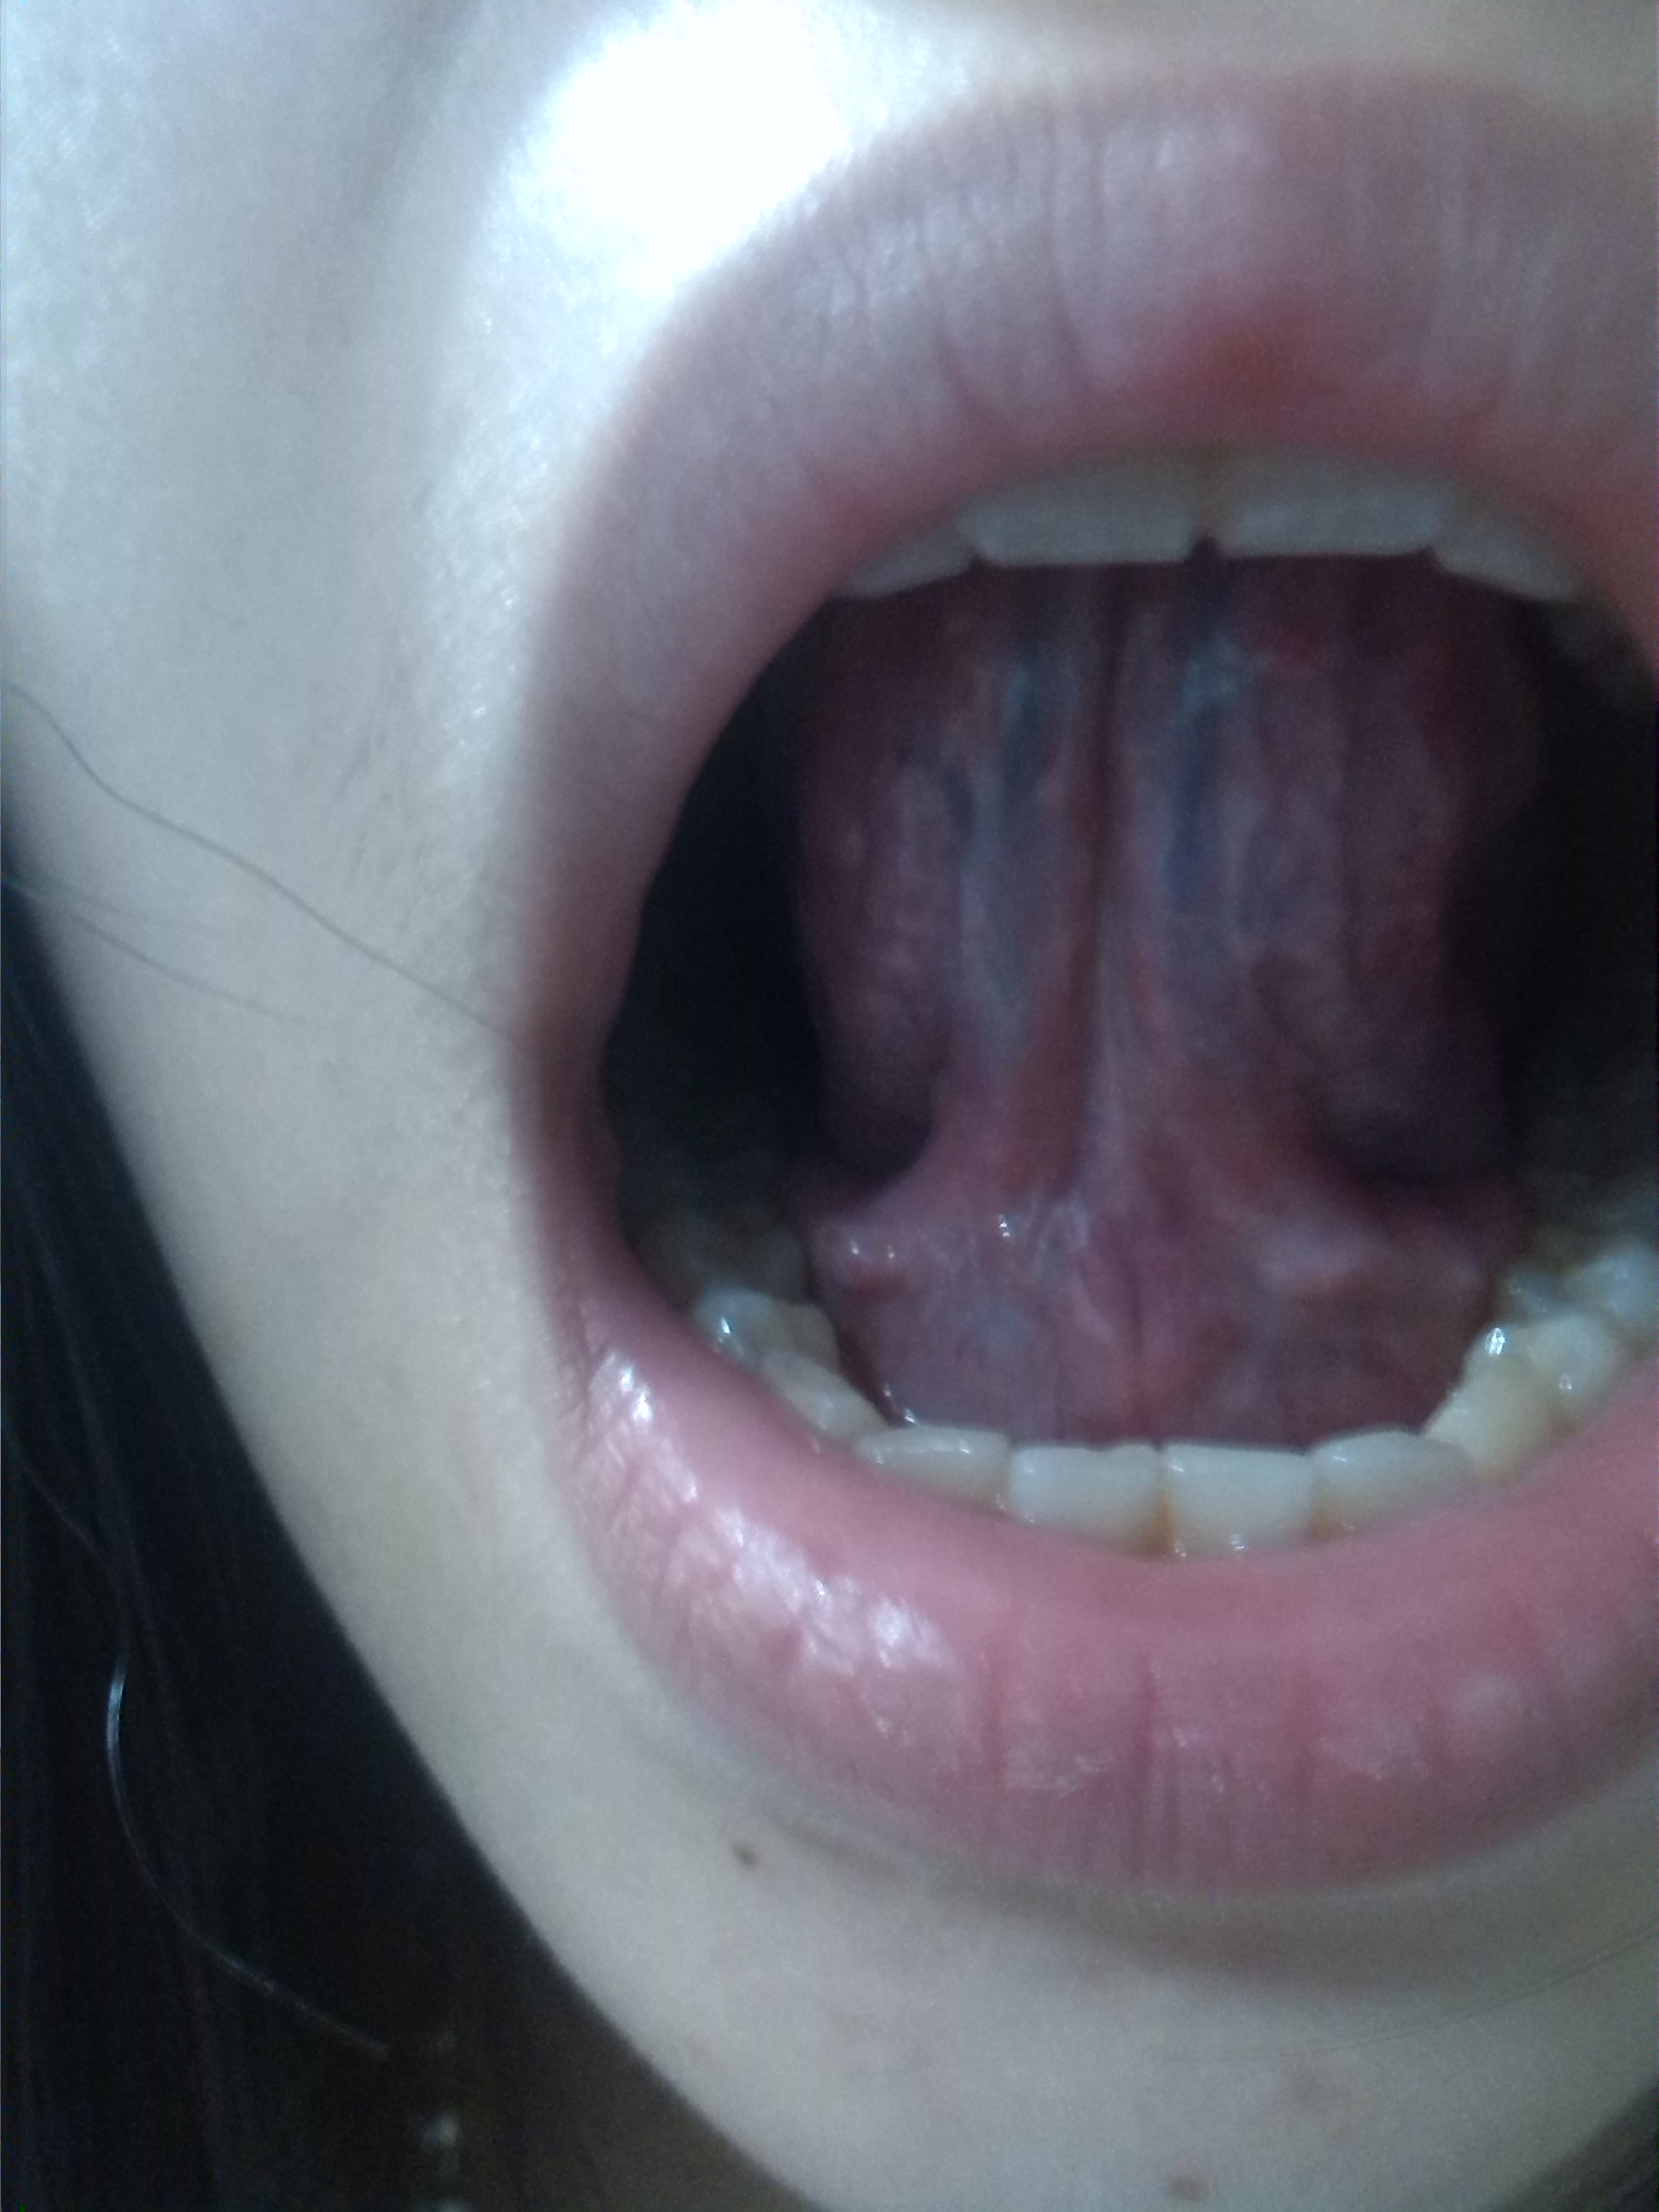 正常人的舌头根部图片